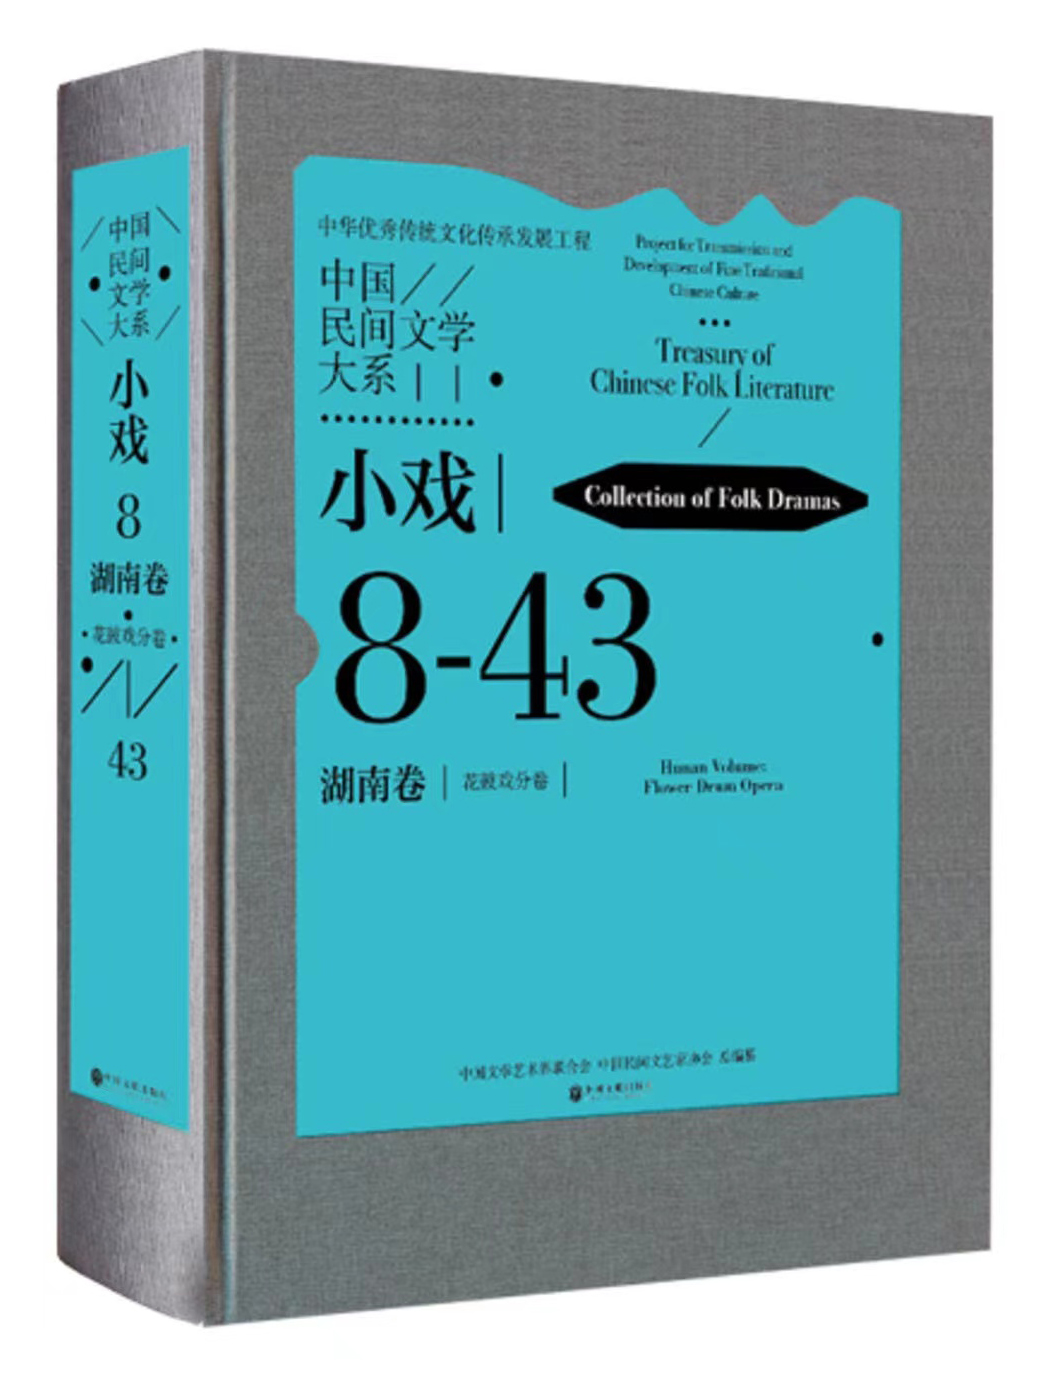 《中国民间文学大系·小戏·湖南卷·花鼓戏分卷》出版